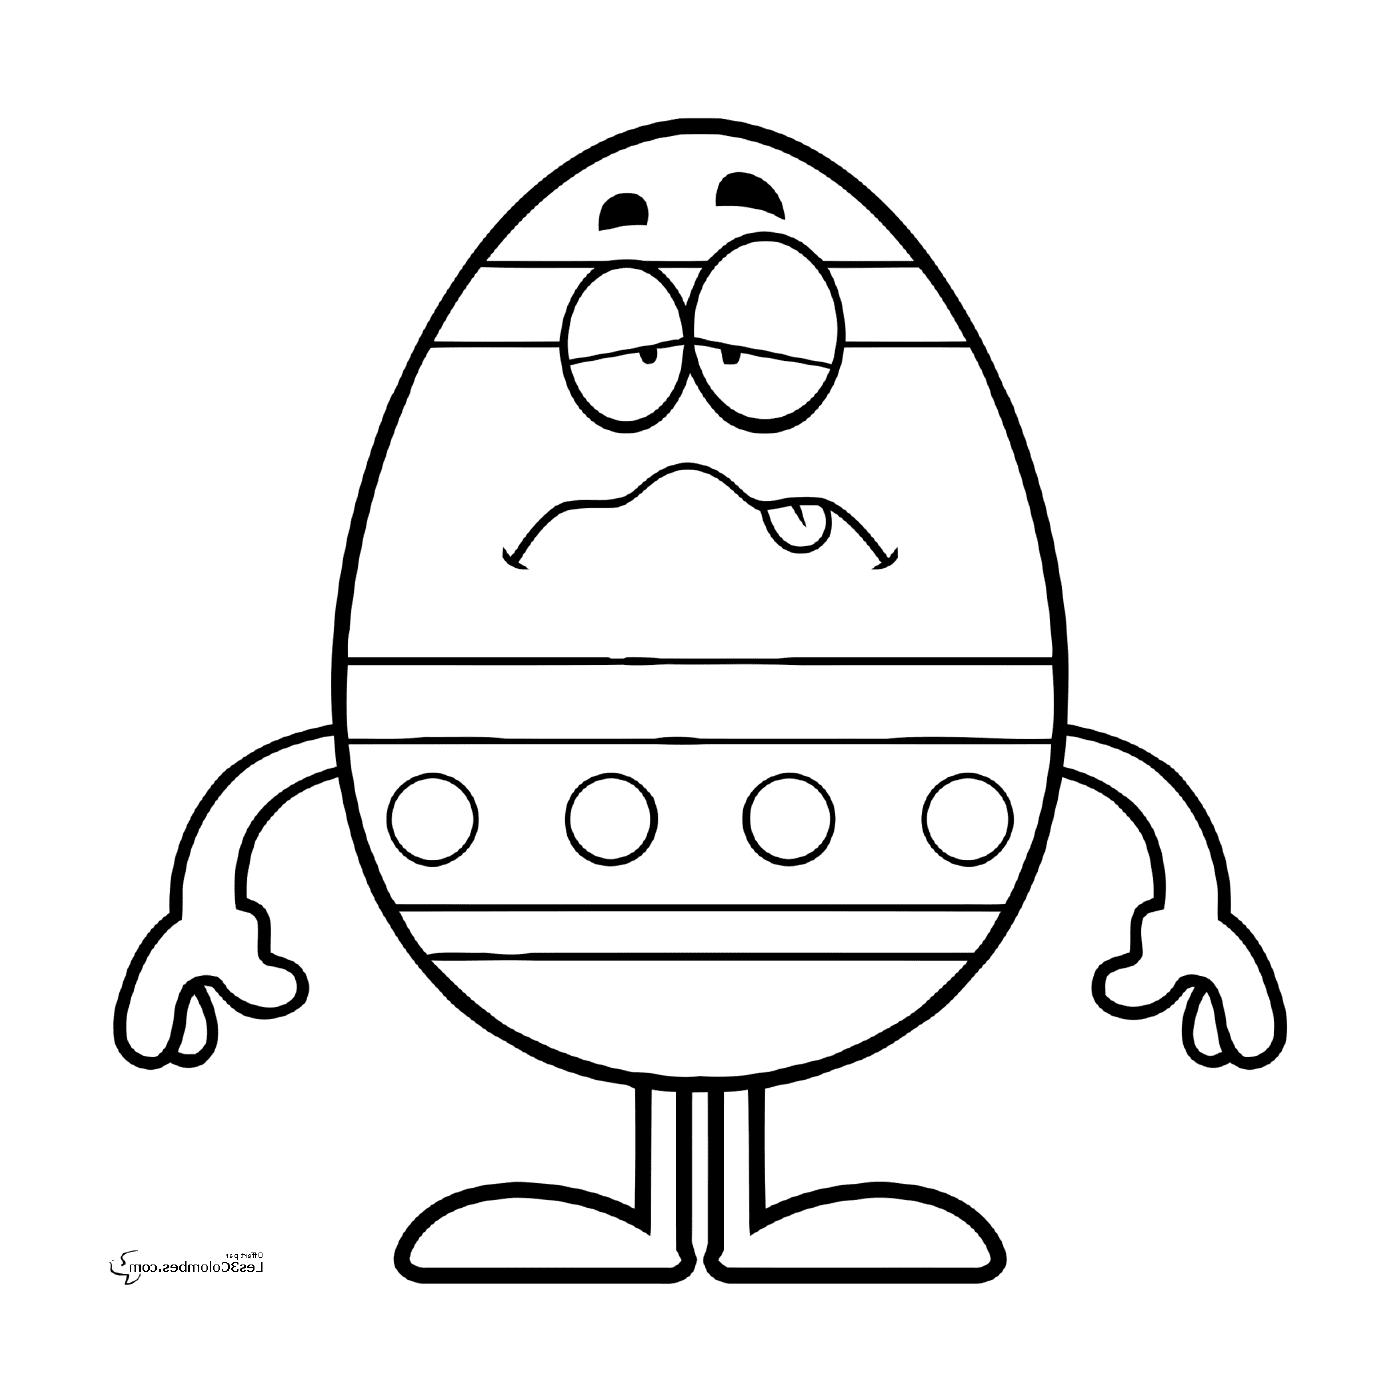  Pasqua 196, un uovo di Pasqua triste 